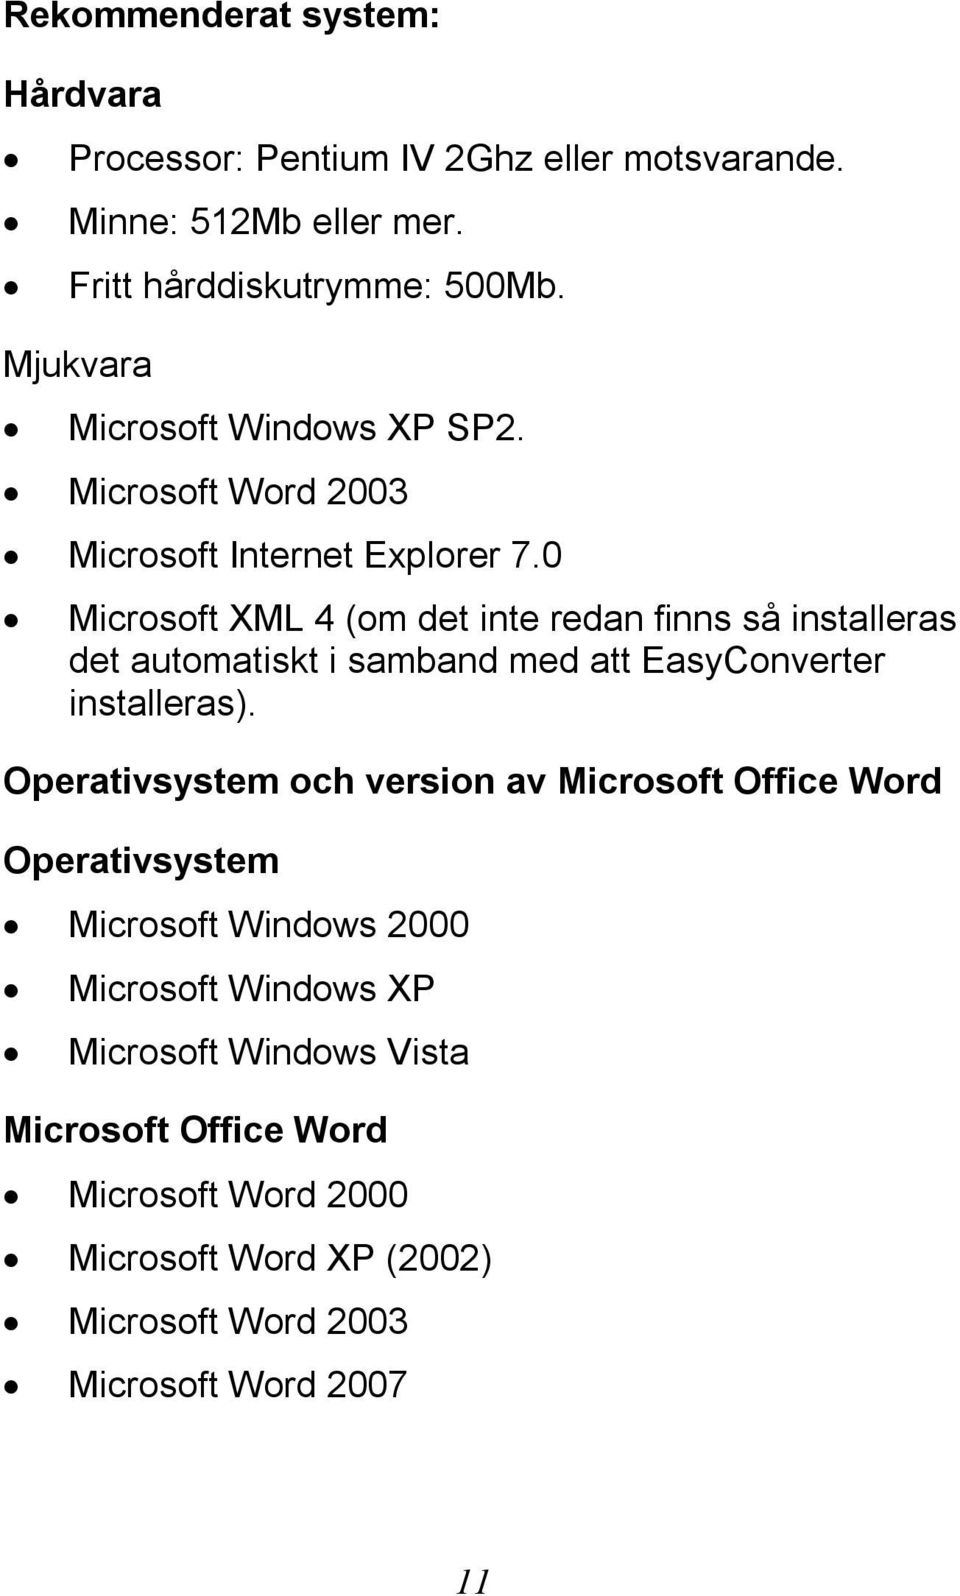 0 Microsoft XML 4 (om det inte redan finns så installeras det automatiskt i samband med att EasyConverter installeras).